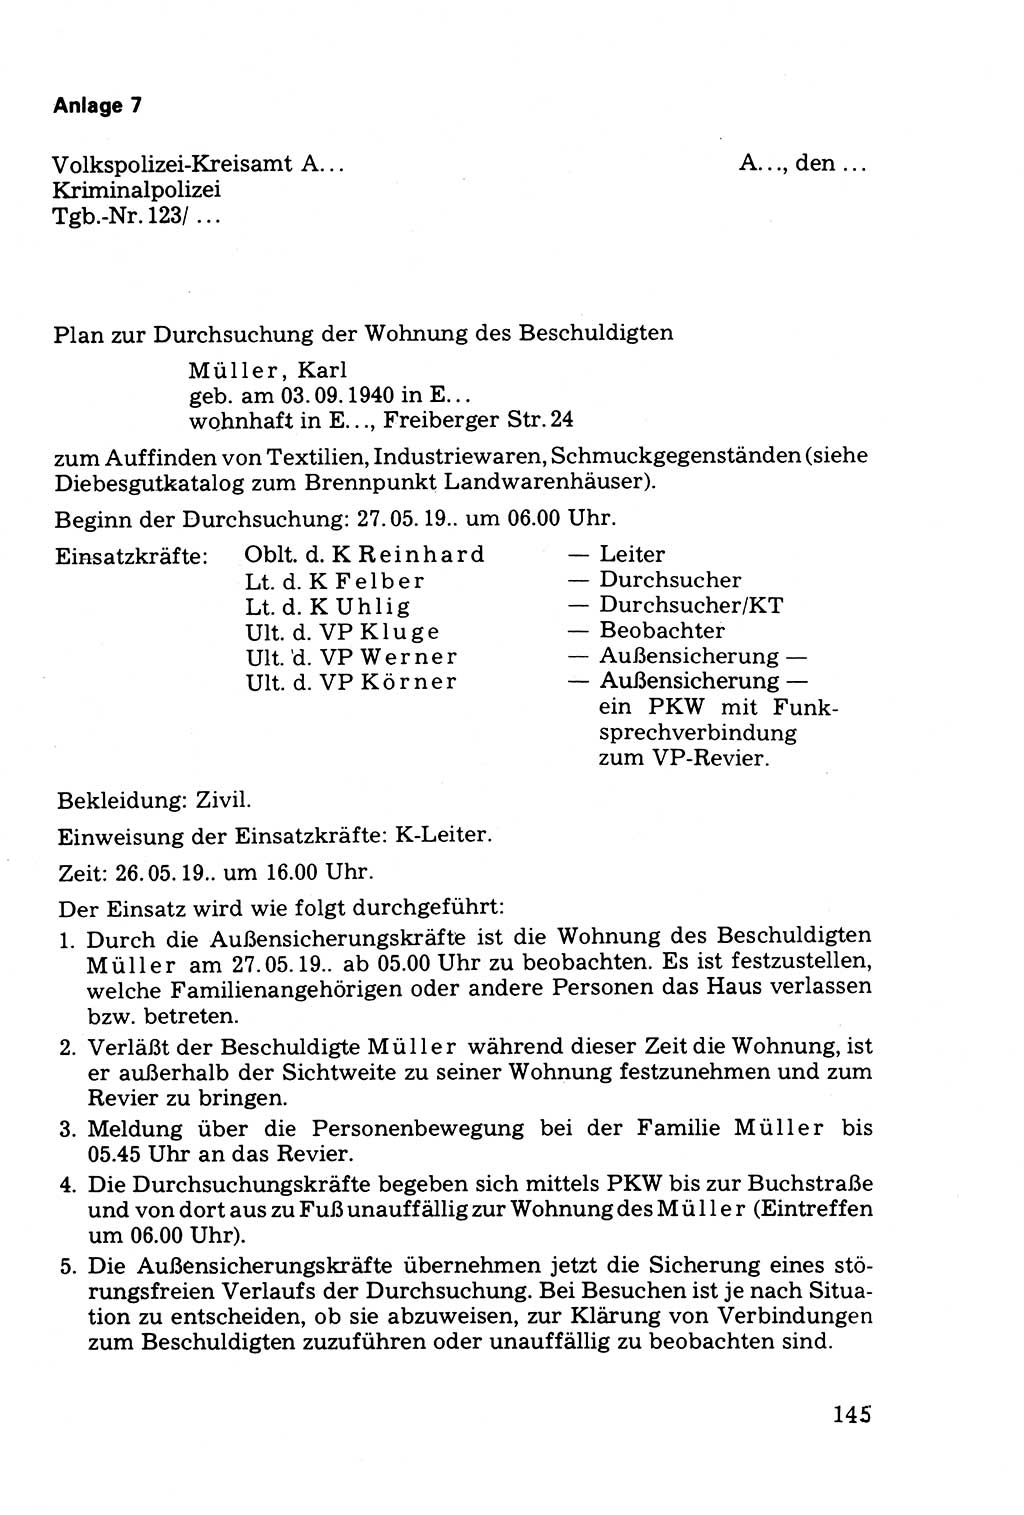 Die Durchsuchung und die Beschlagnahme [Deutsche Demokratische Republik (DDR)] 1979, Seite 145 (Durchs. Beschl. DDR 1979, S. 145)